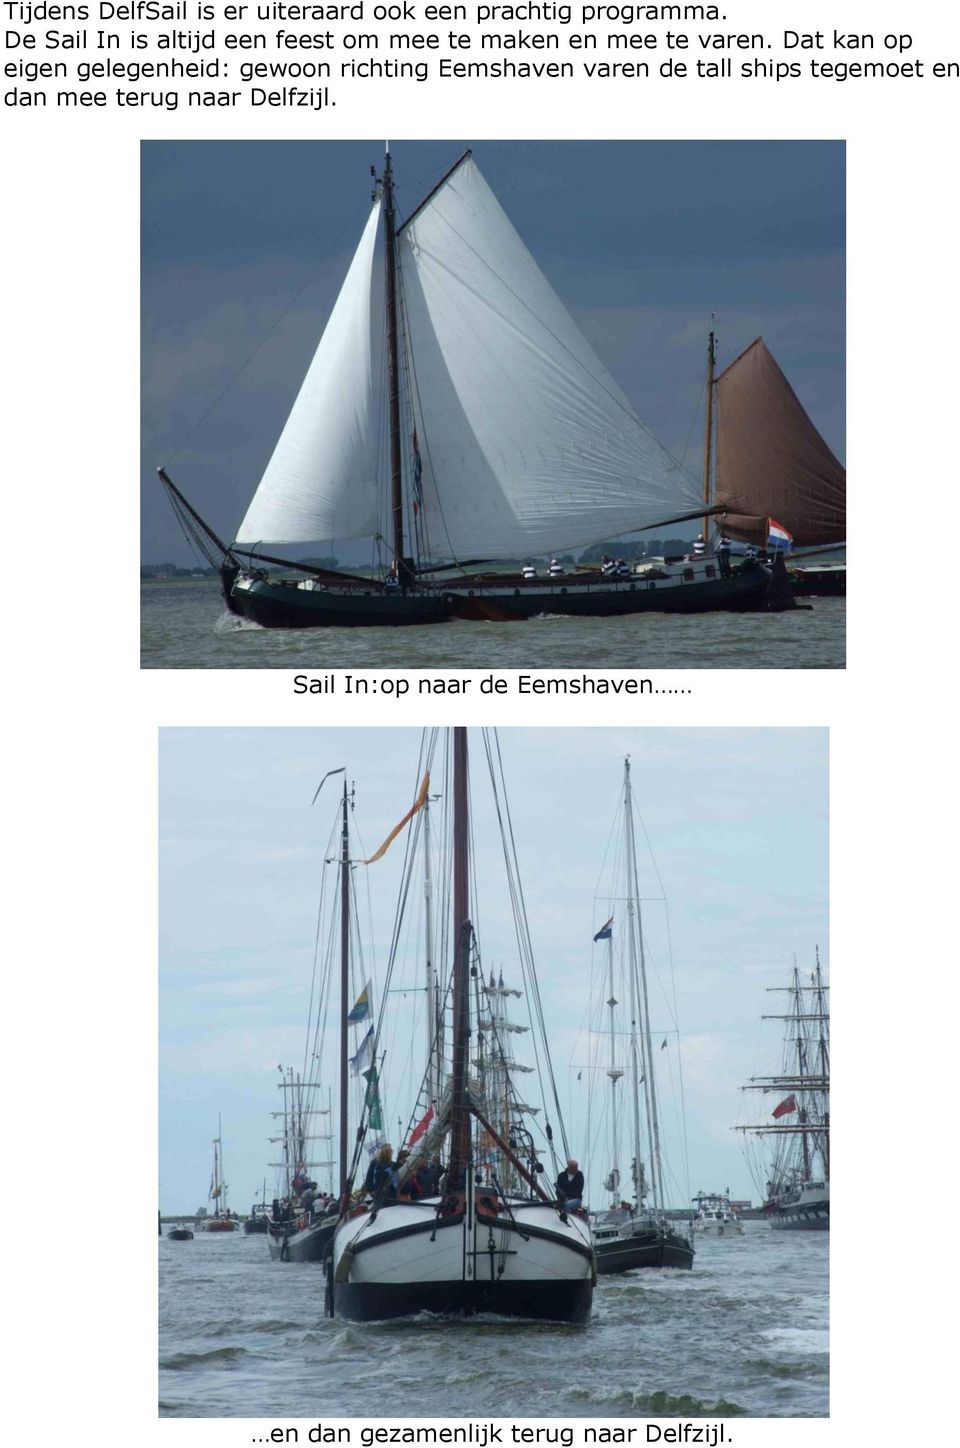 Dat kan op eigen gelegenheid: gewoon richting Eemshaven varen de tall ships